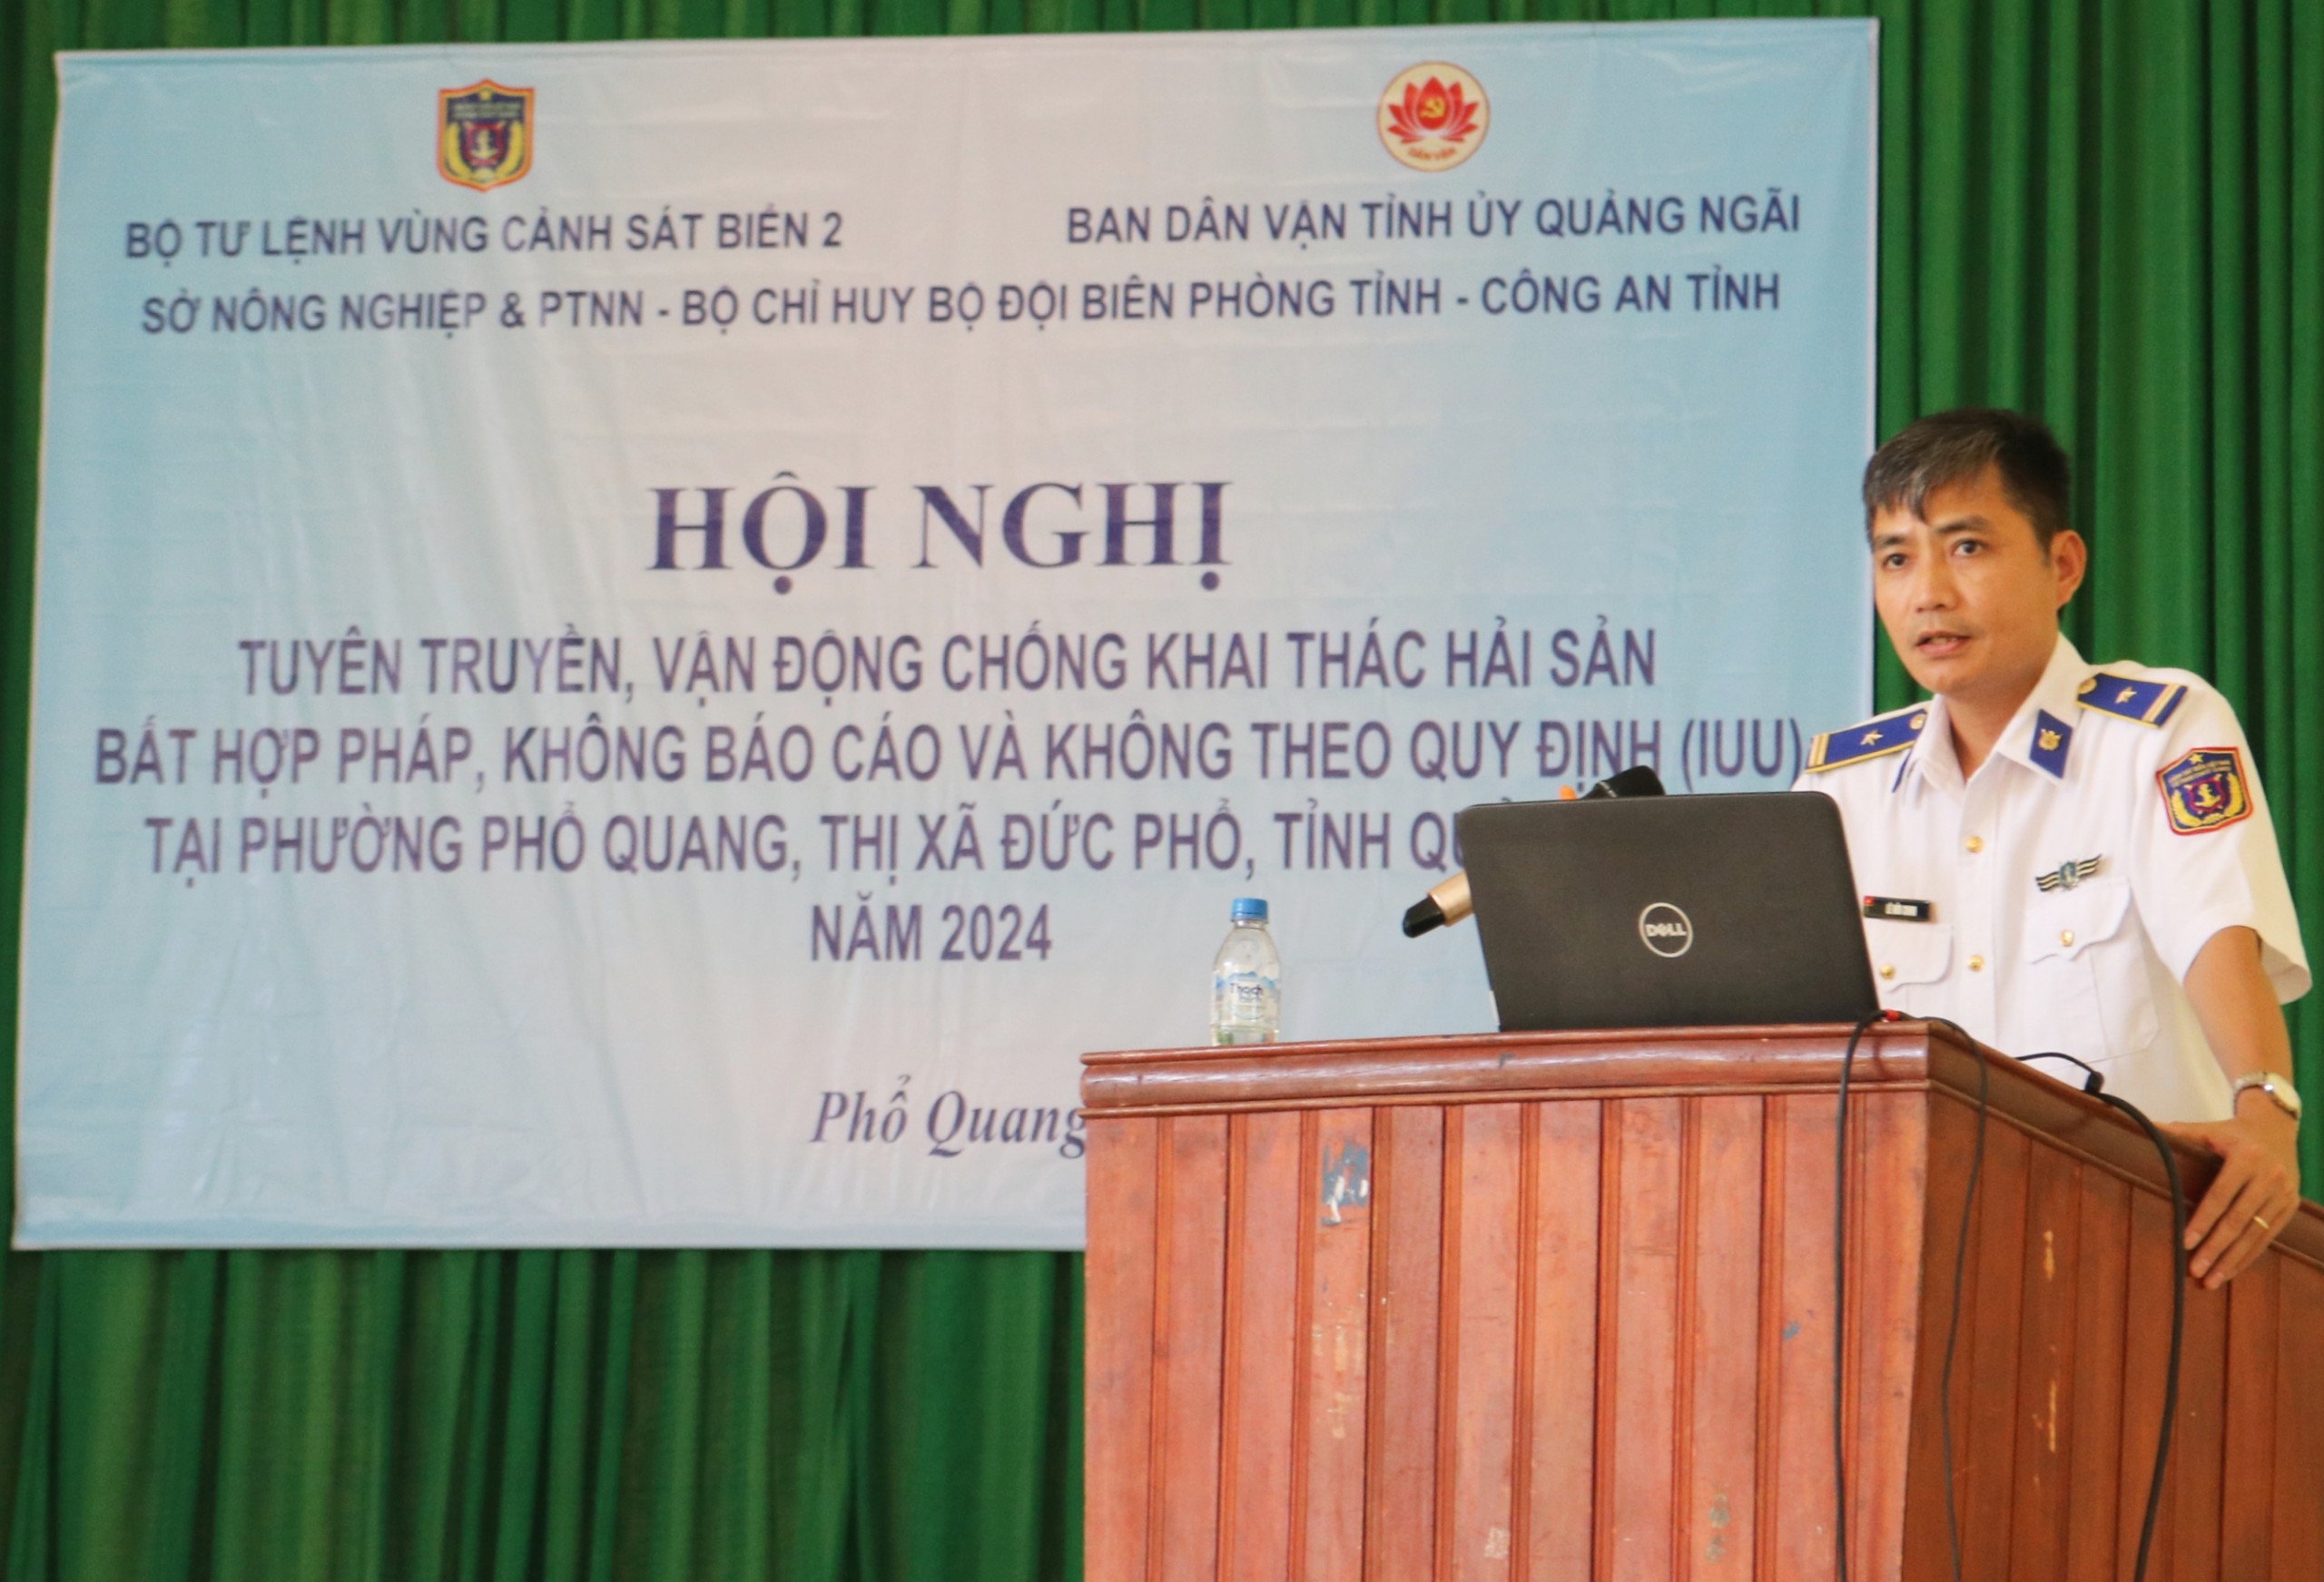 Tuyên truyền chống khai thác IUU cho ngư dân phường Phổ Quang